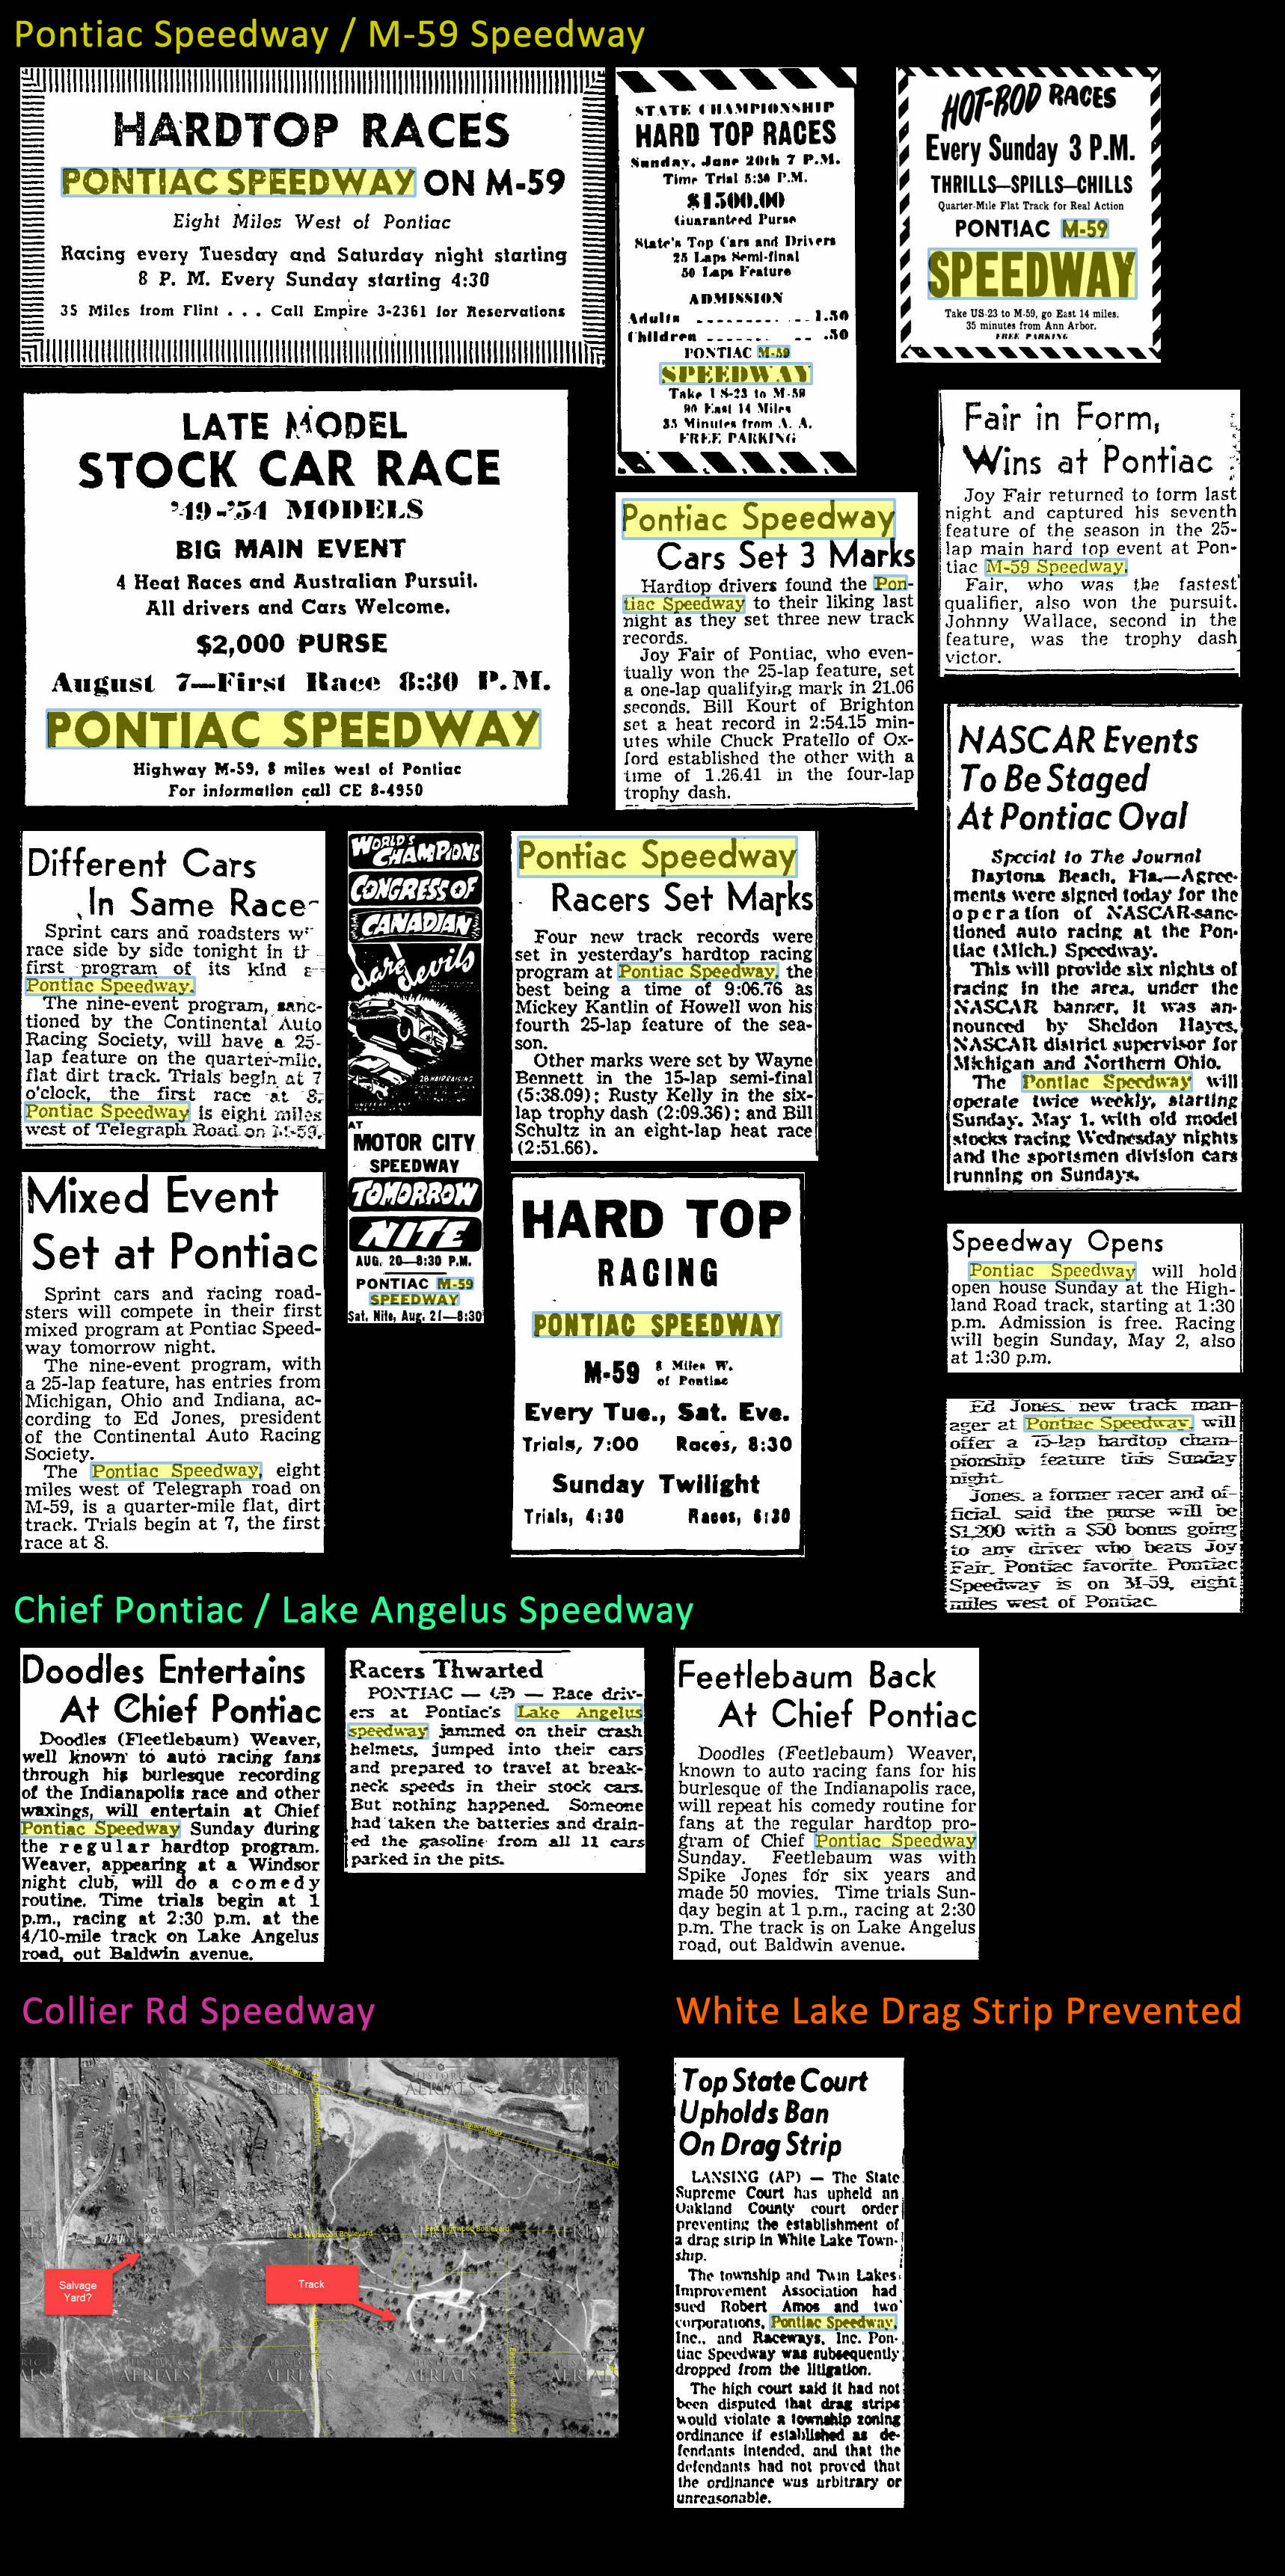 Pontiac Speedway (M-59 Speedway) - 1953-1955 Ads For Oak County Speedways (newer photo)